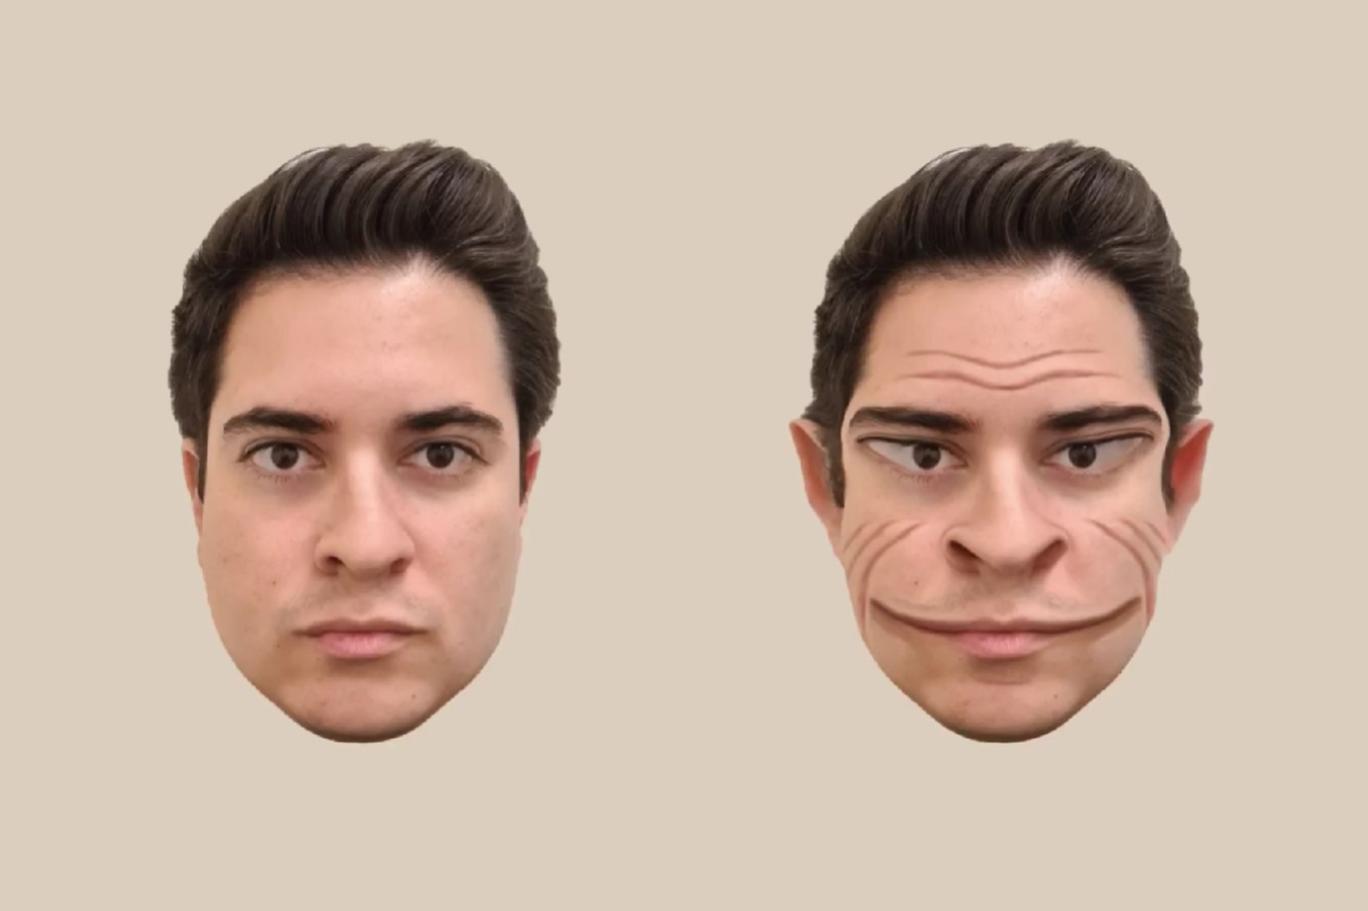 "Şeytan yüzü" sendromuna sahip kişilerin başkalarını nasıl gördüğü bilgisayarda resmedildi